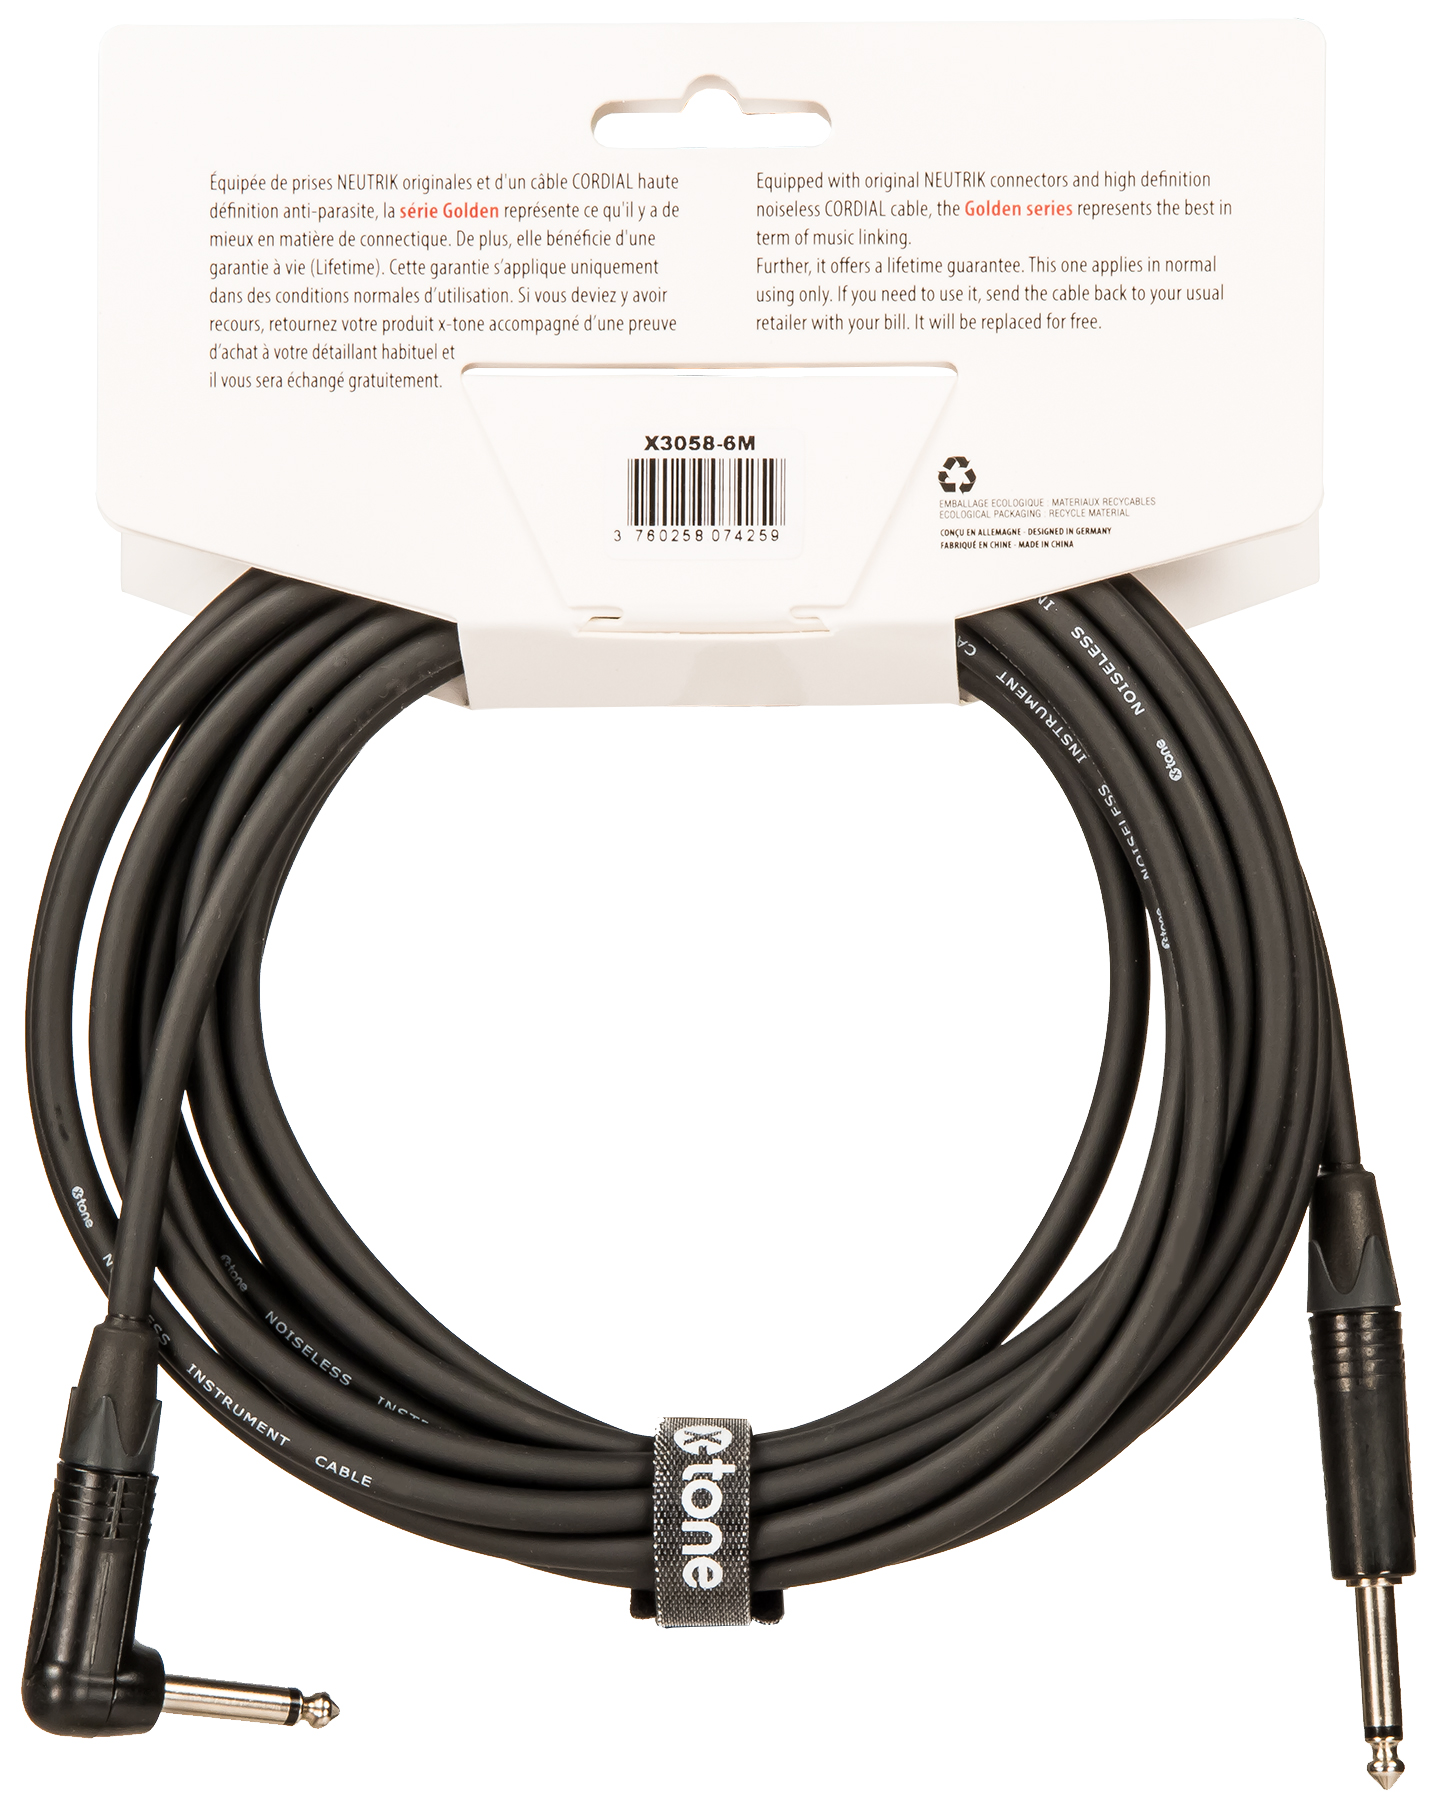 X-tone X3058-6m Instrument Cable Golden Series Neutrik Droit/coude 6m - CÂble - Variation 2